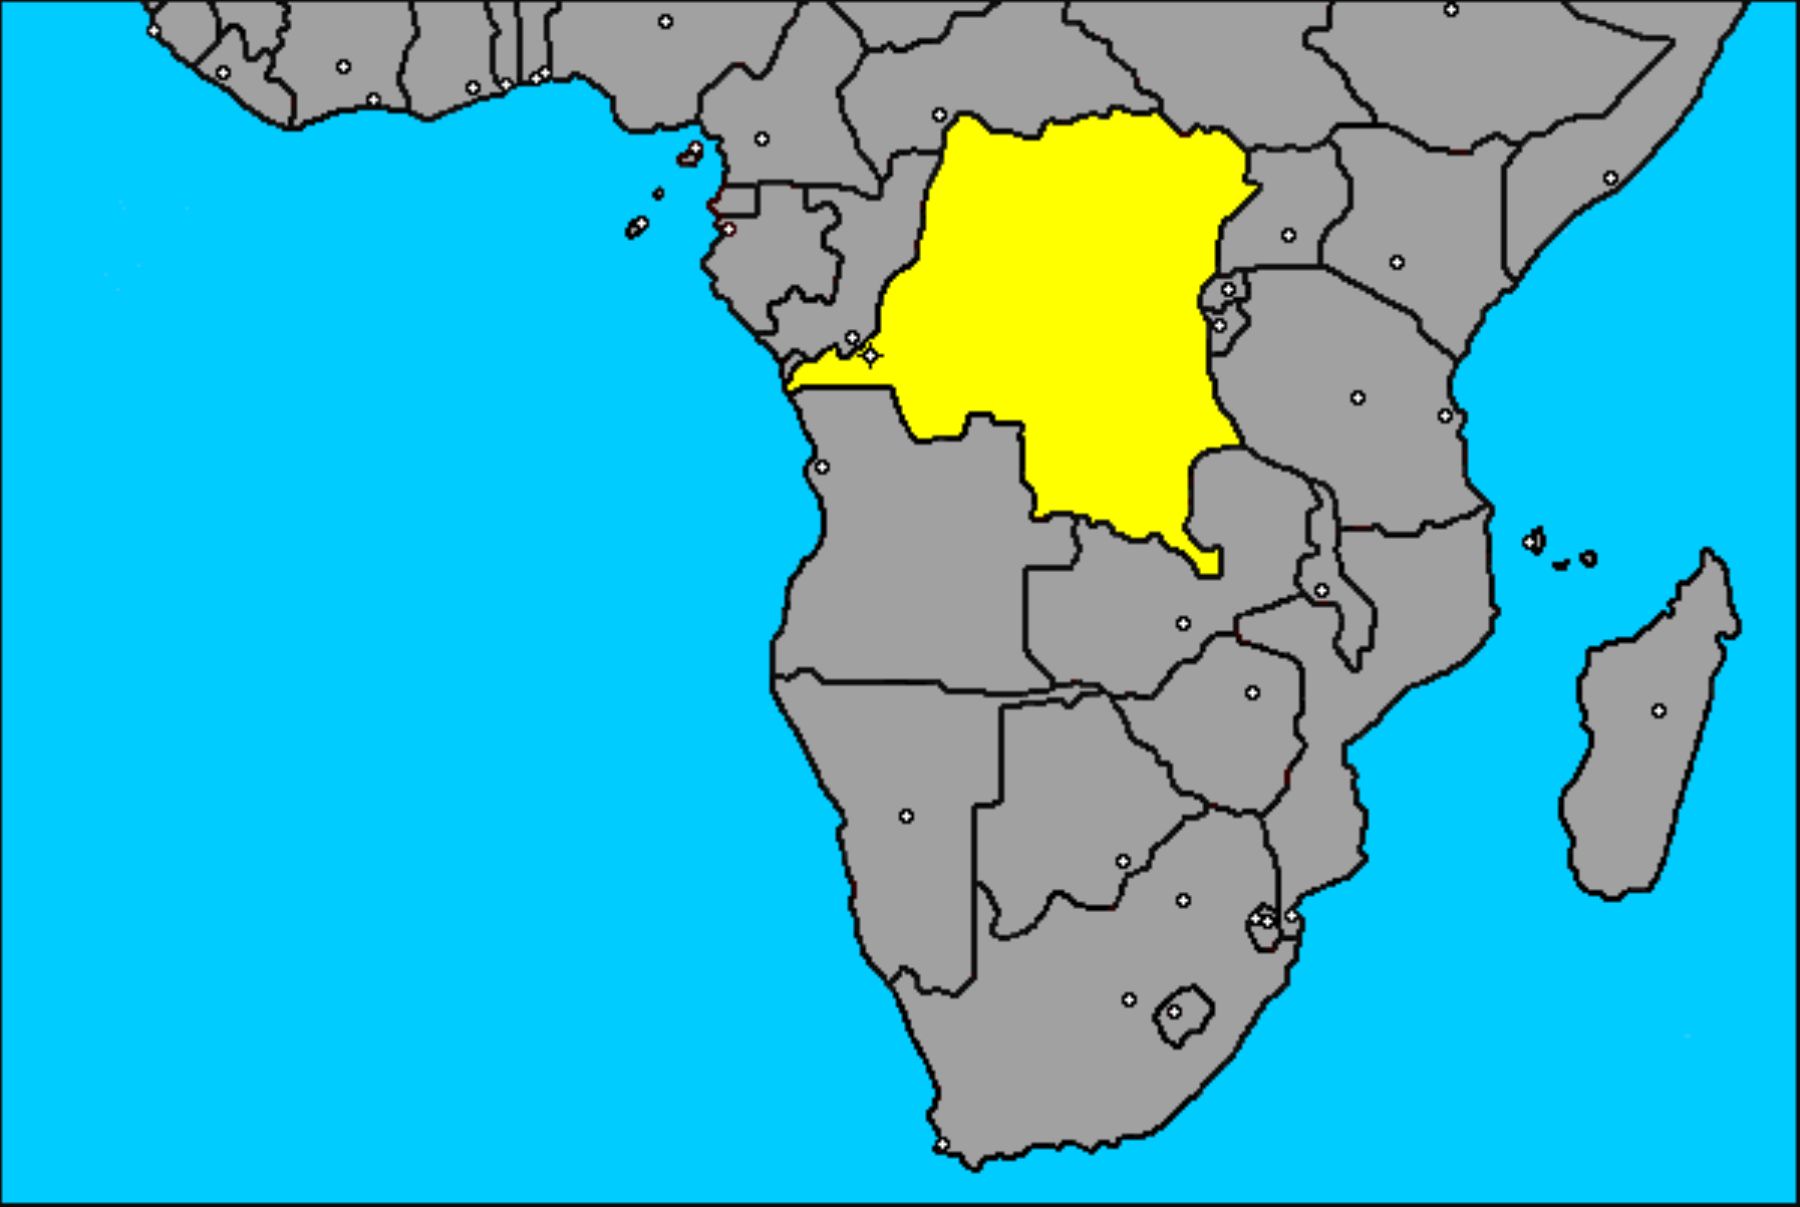 Ubicación del Congo en el mapa de África.